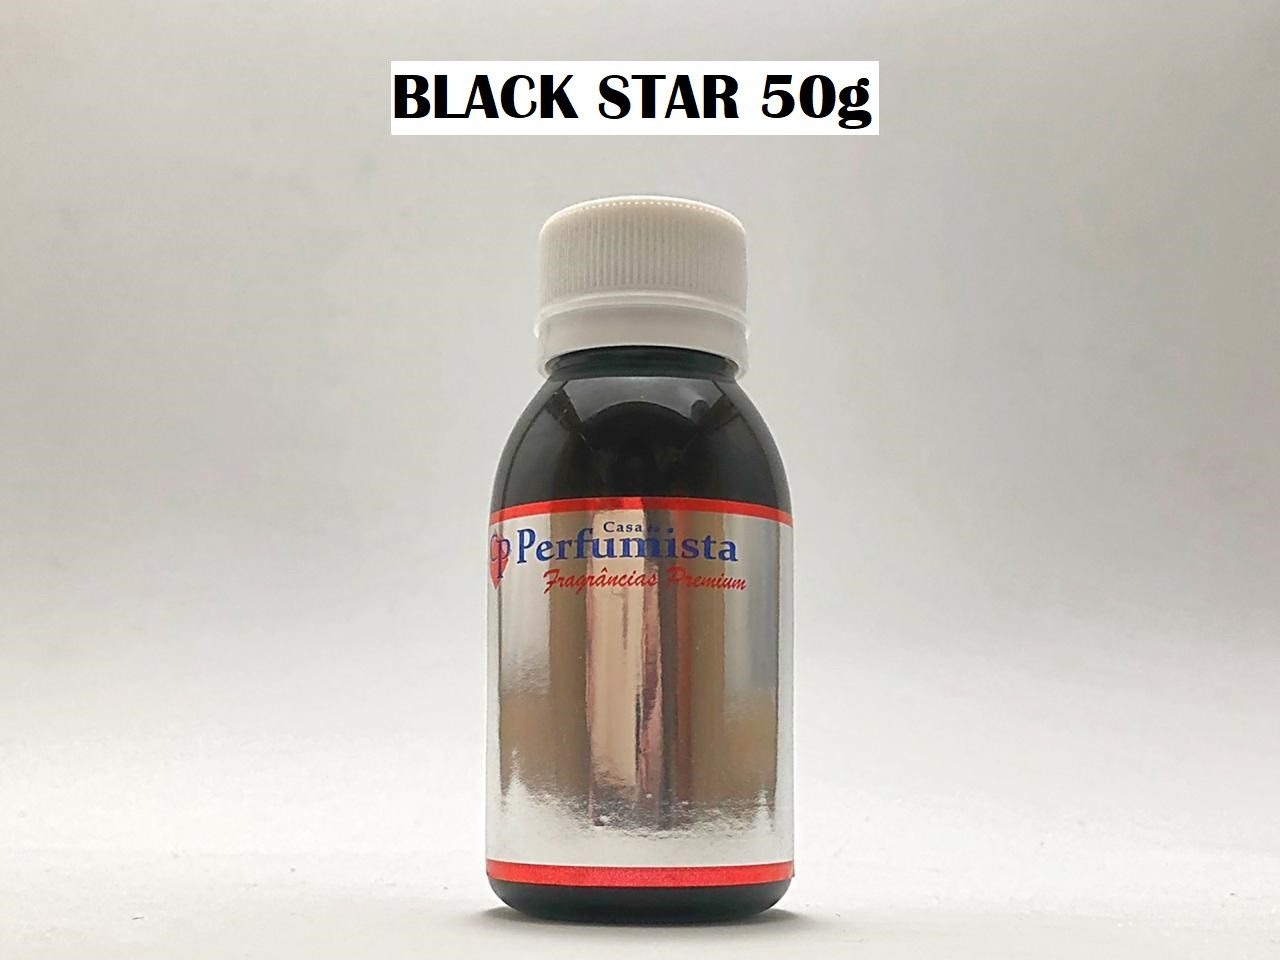 BLACK STAR 50g - Inspiração: Mercedes Club Black Masculino 